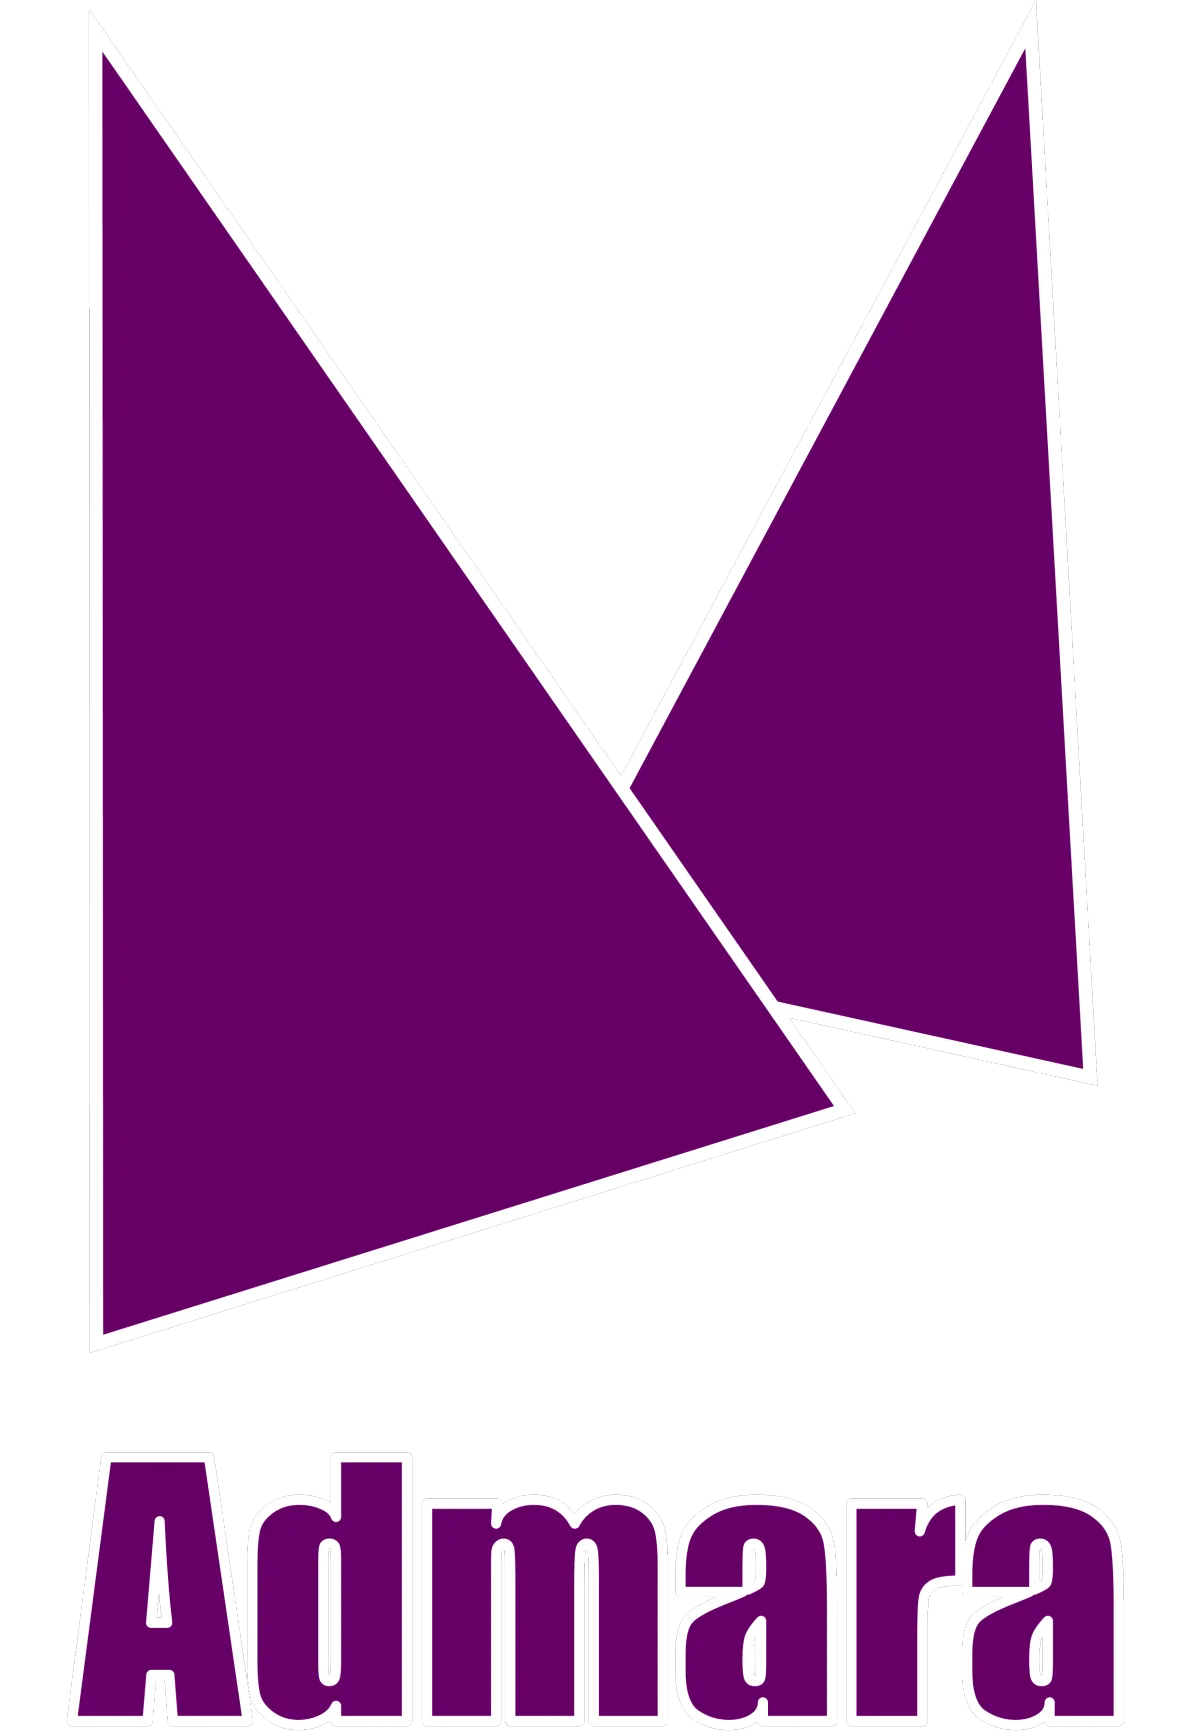 Logo von 'Admara' mit geometrischen, magentafarbenen Formen, die einen abstrakten Buchstaben 'A' darstellen, gefolgt vom Firmennamen in purpurfarbener Schrift auf einem transparenten Hintergrund.